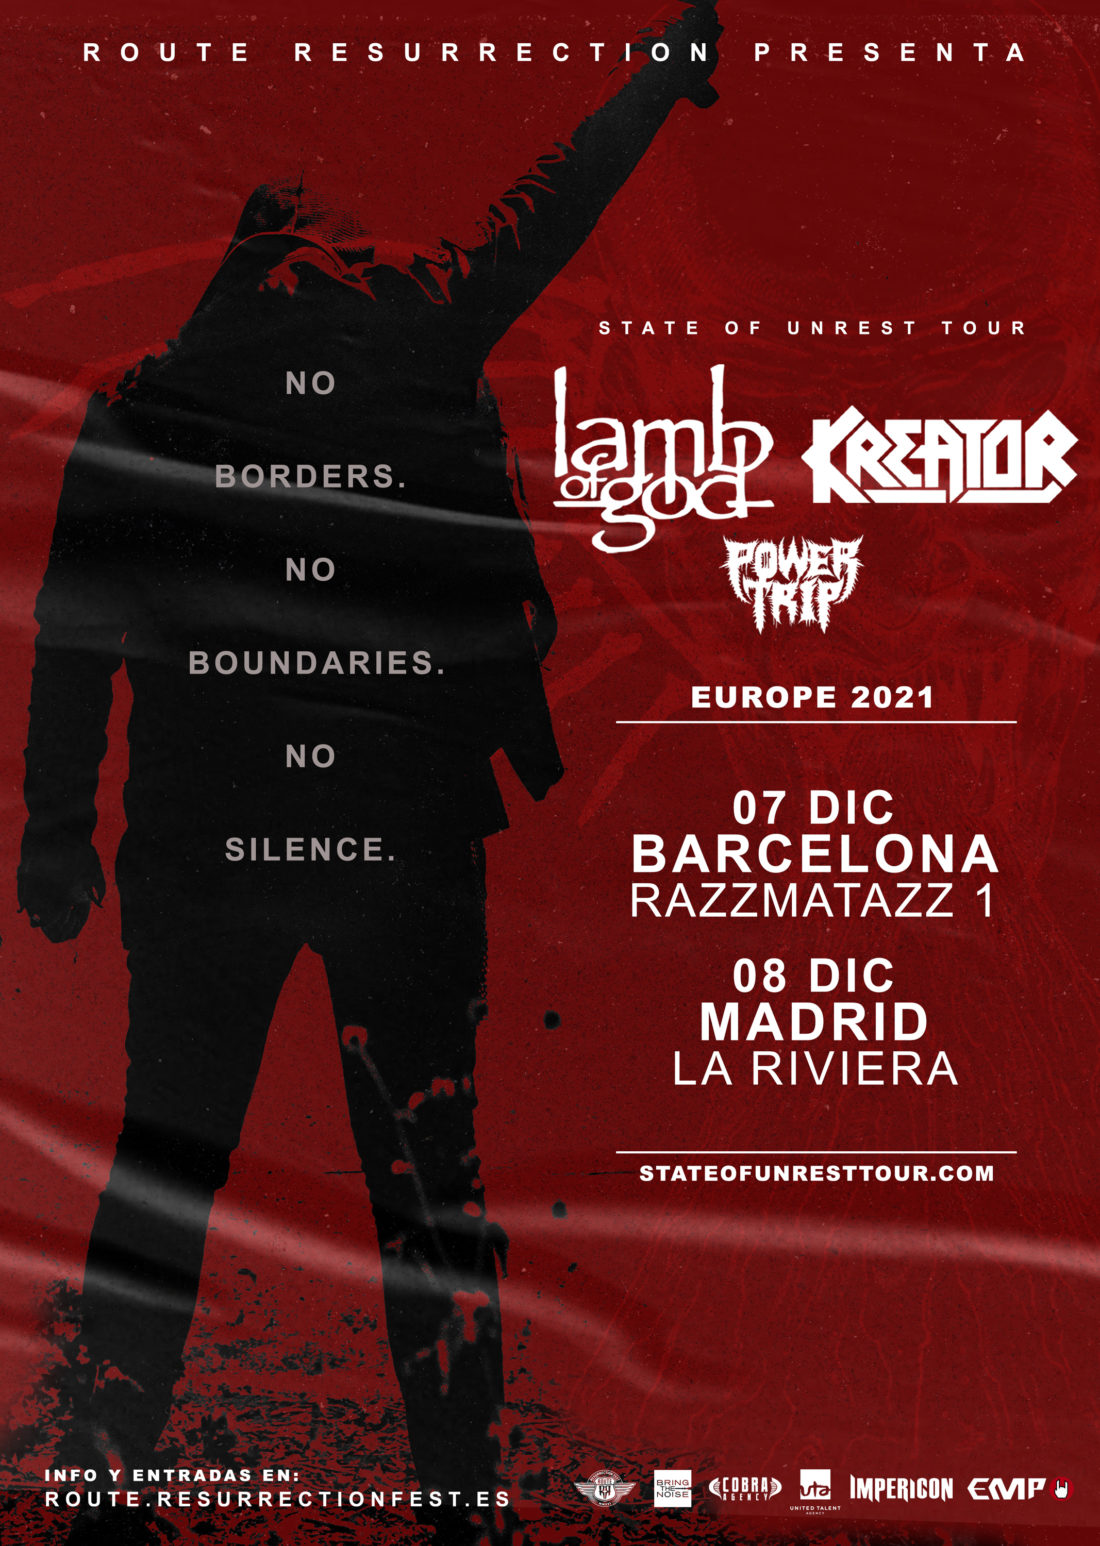 Anunciadas las nuevas fechas de la gira de Lamb of God y Kreator para 2021